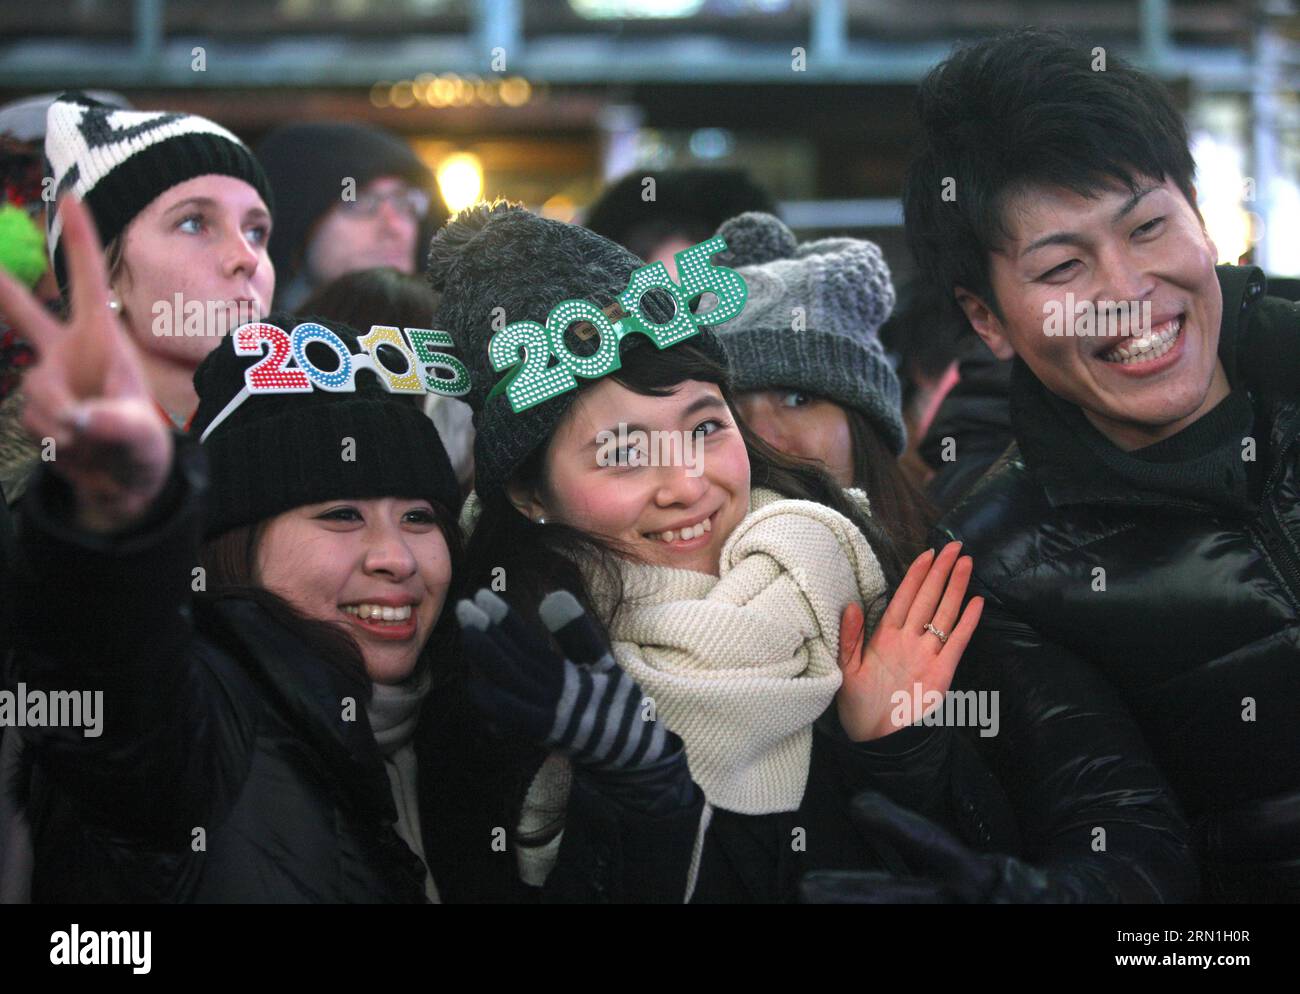 La gente partecipa alla celebrazione di Capodanno a Times Square a New York, negli Stati Uniti, il 31 dicembre 2014. Times Square è stata al centro dell'attenzione mondiale per il Capodanno per più di 100 anni. La prima celebrazione dell'abbassamento della palla è avvenuta nel 1907, e questa tradizione è ora un simbolo universale di accoglienza del nuovo anno. ) (Lyi) NEW YORK-USA-CAPODANNO WuxXia PUBLICATIONxNOTxINxCHN celebrità partecipano alla celebrazione di Capodanno A Times Square a New York gli Stati Uniti SUL DEC 31 2014 Times Square è stato il centro dell'attenzione mondiale SULL'EV di Capodanno Foto Stock